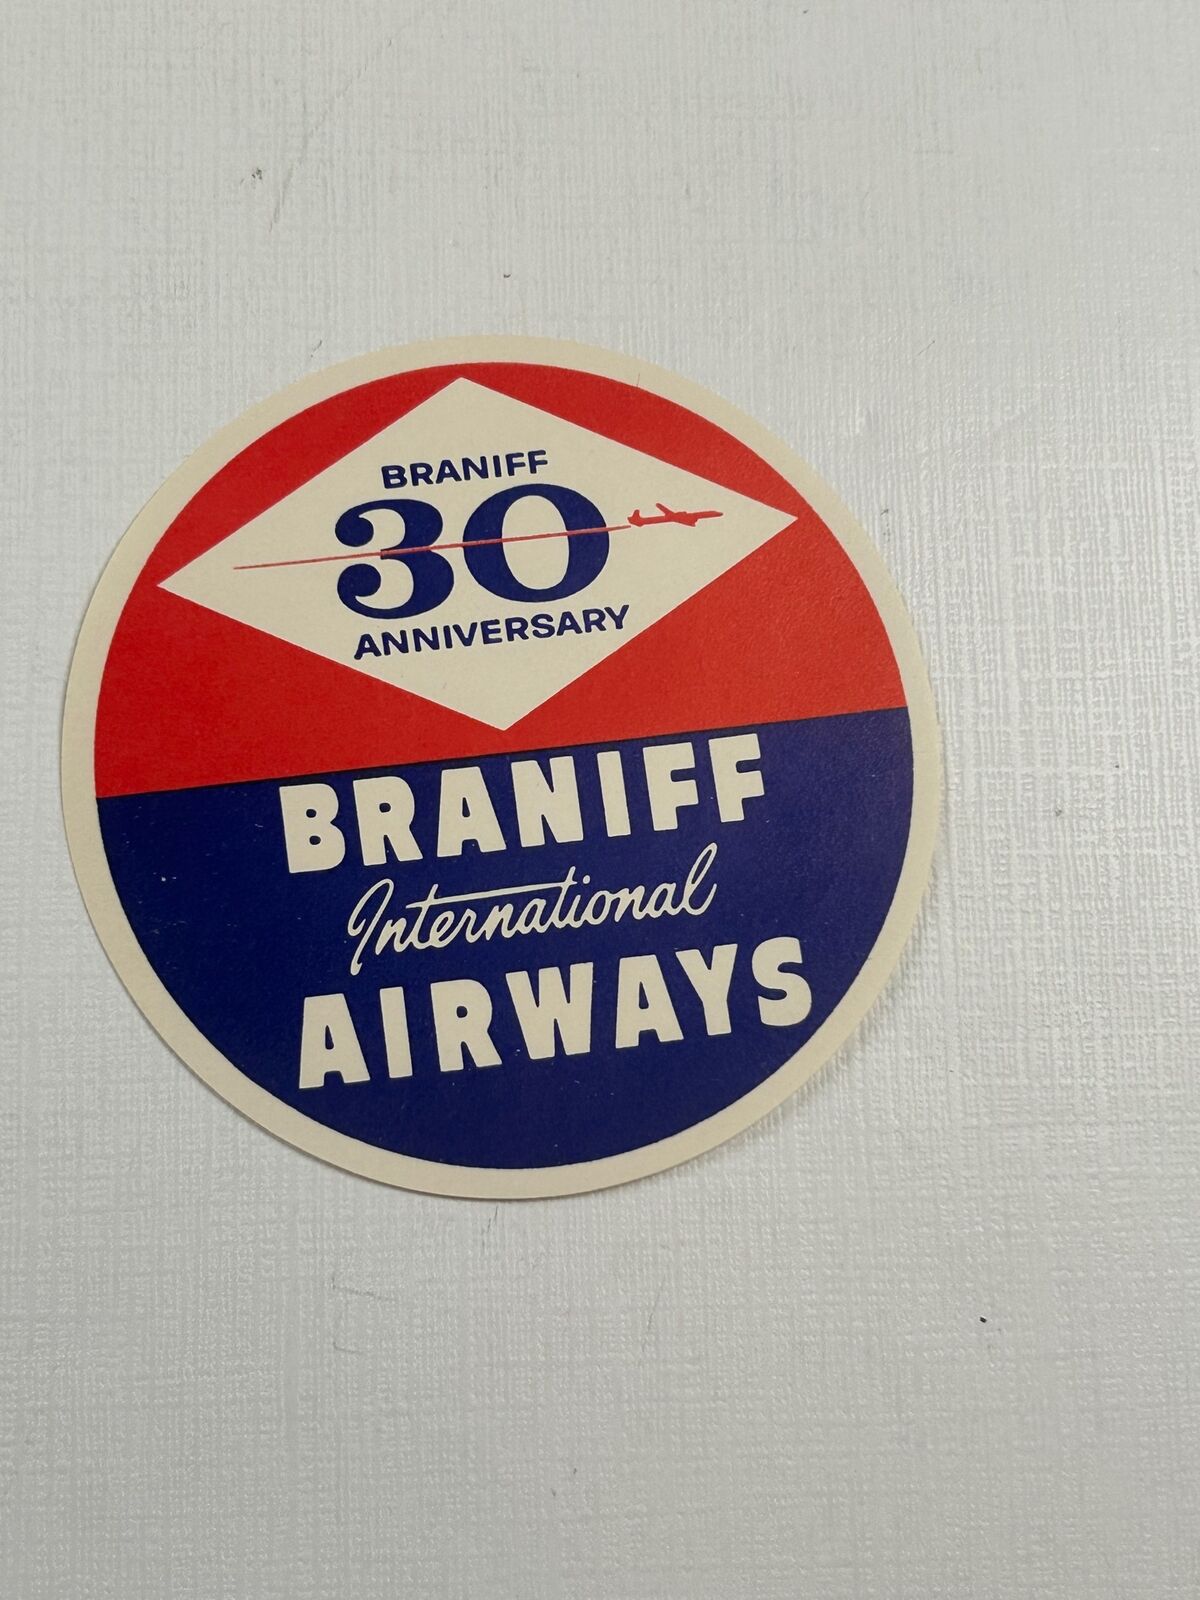 Vintage Airline Travel Label Braniff International Airways 30th Anniversary 